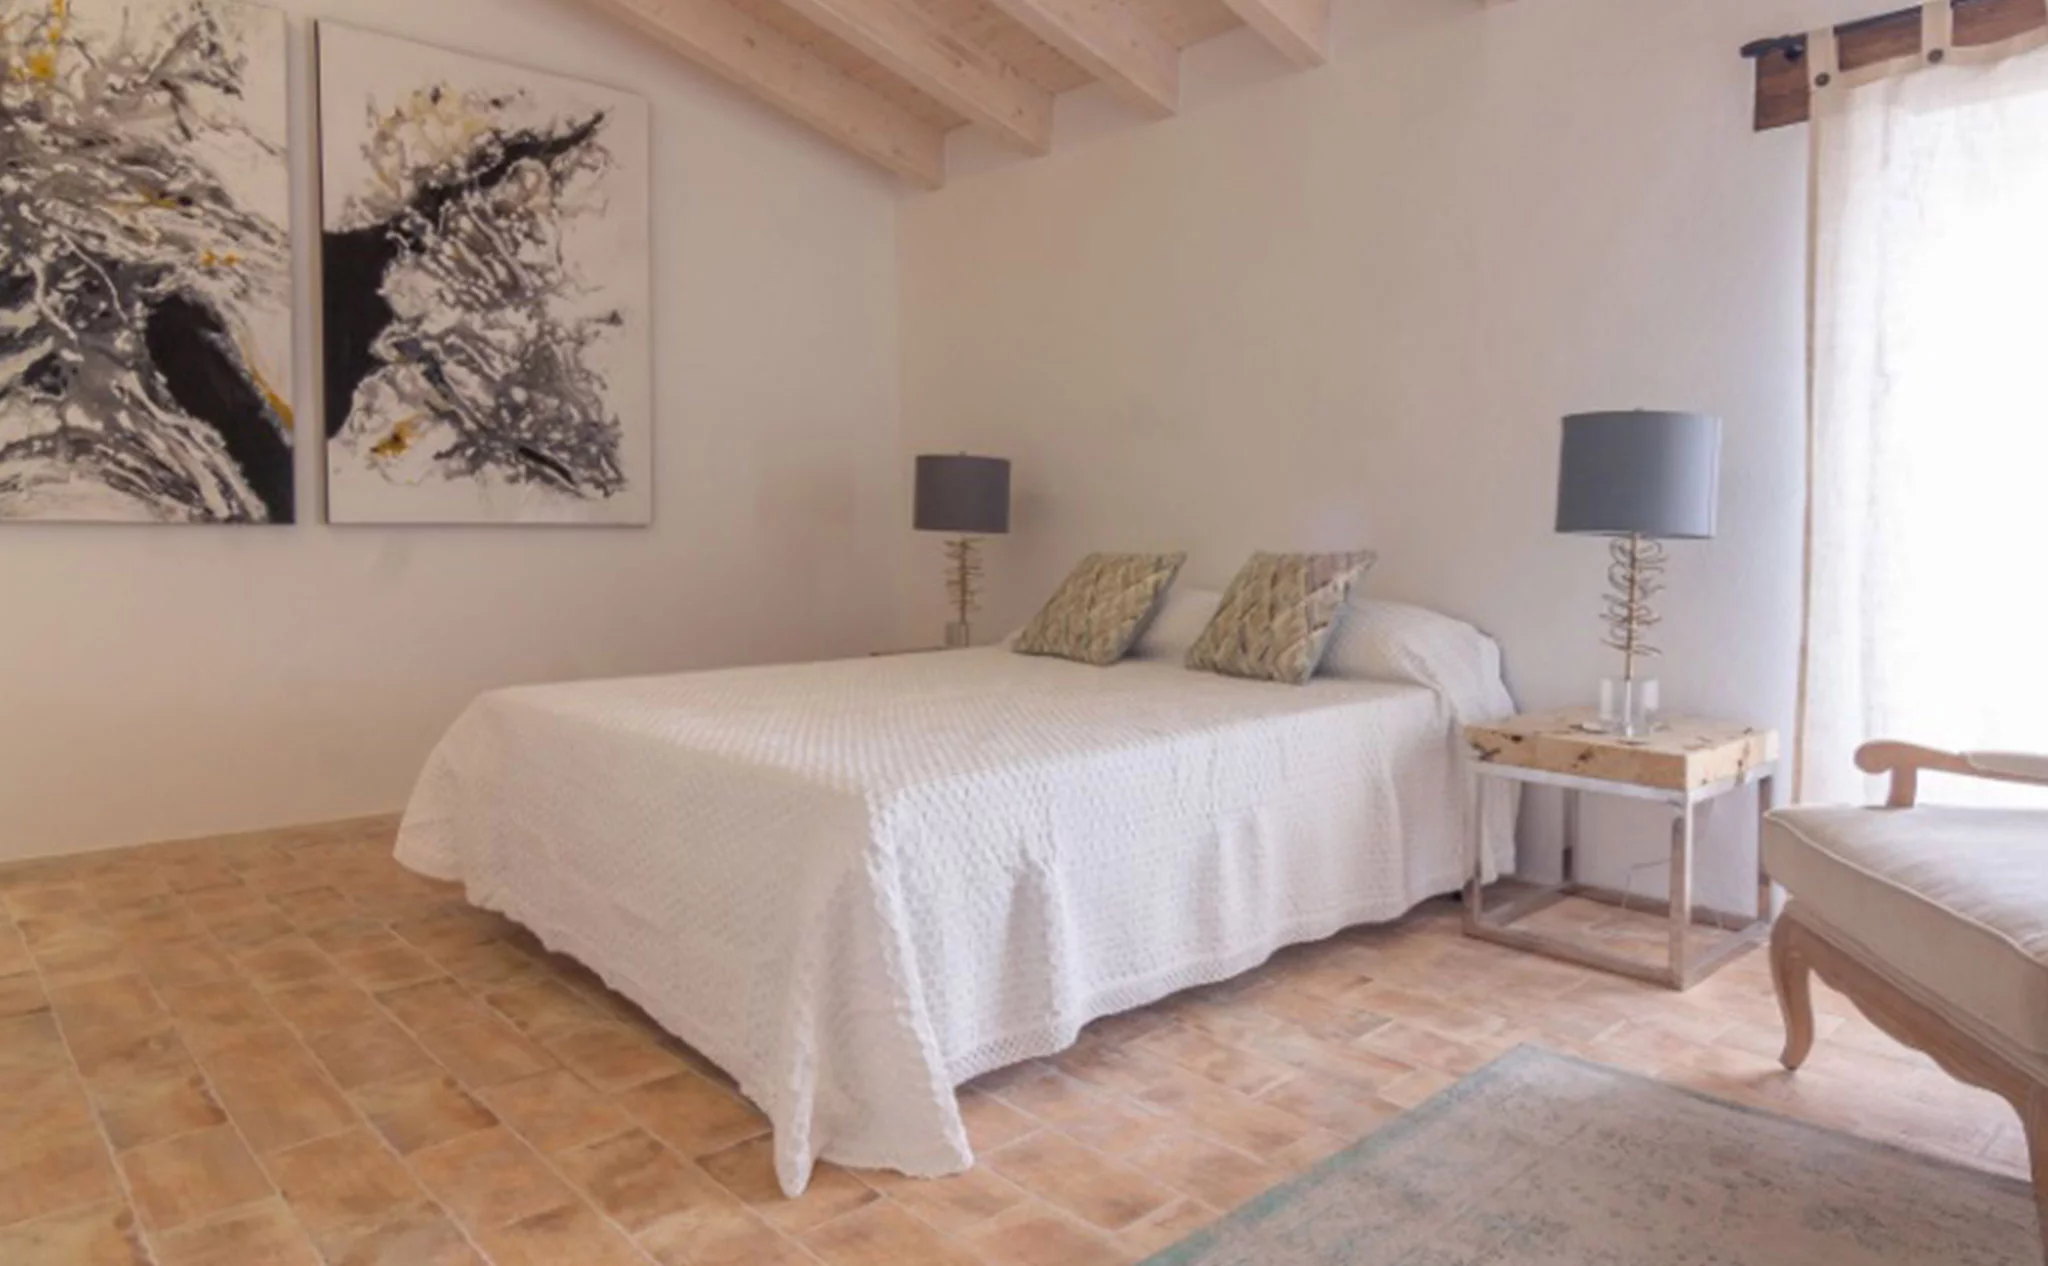 Dormitorio en una casa de pueblo en venta en el centro de Xàbia – MORAGUESPONS Mediterranean Houses